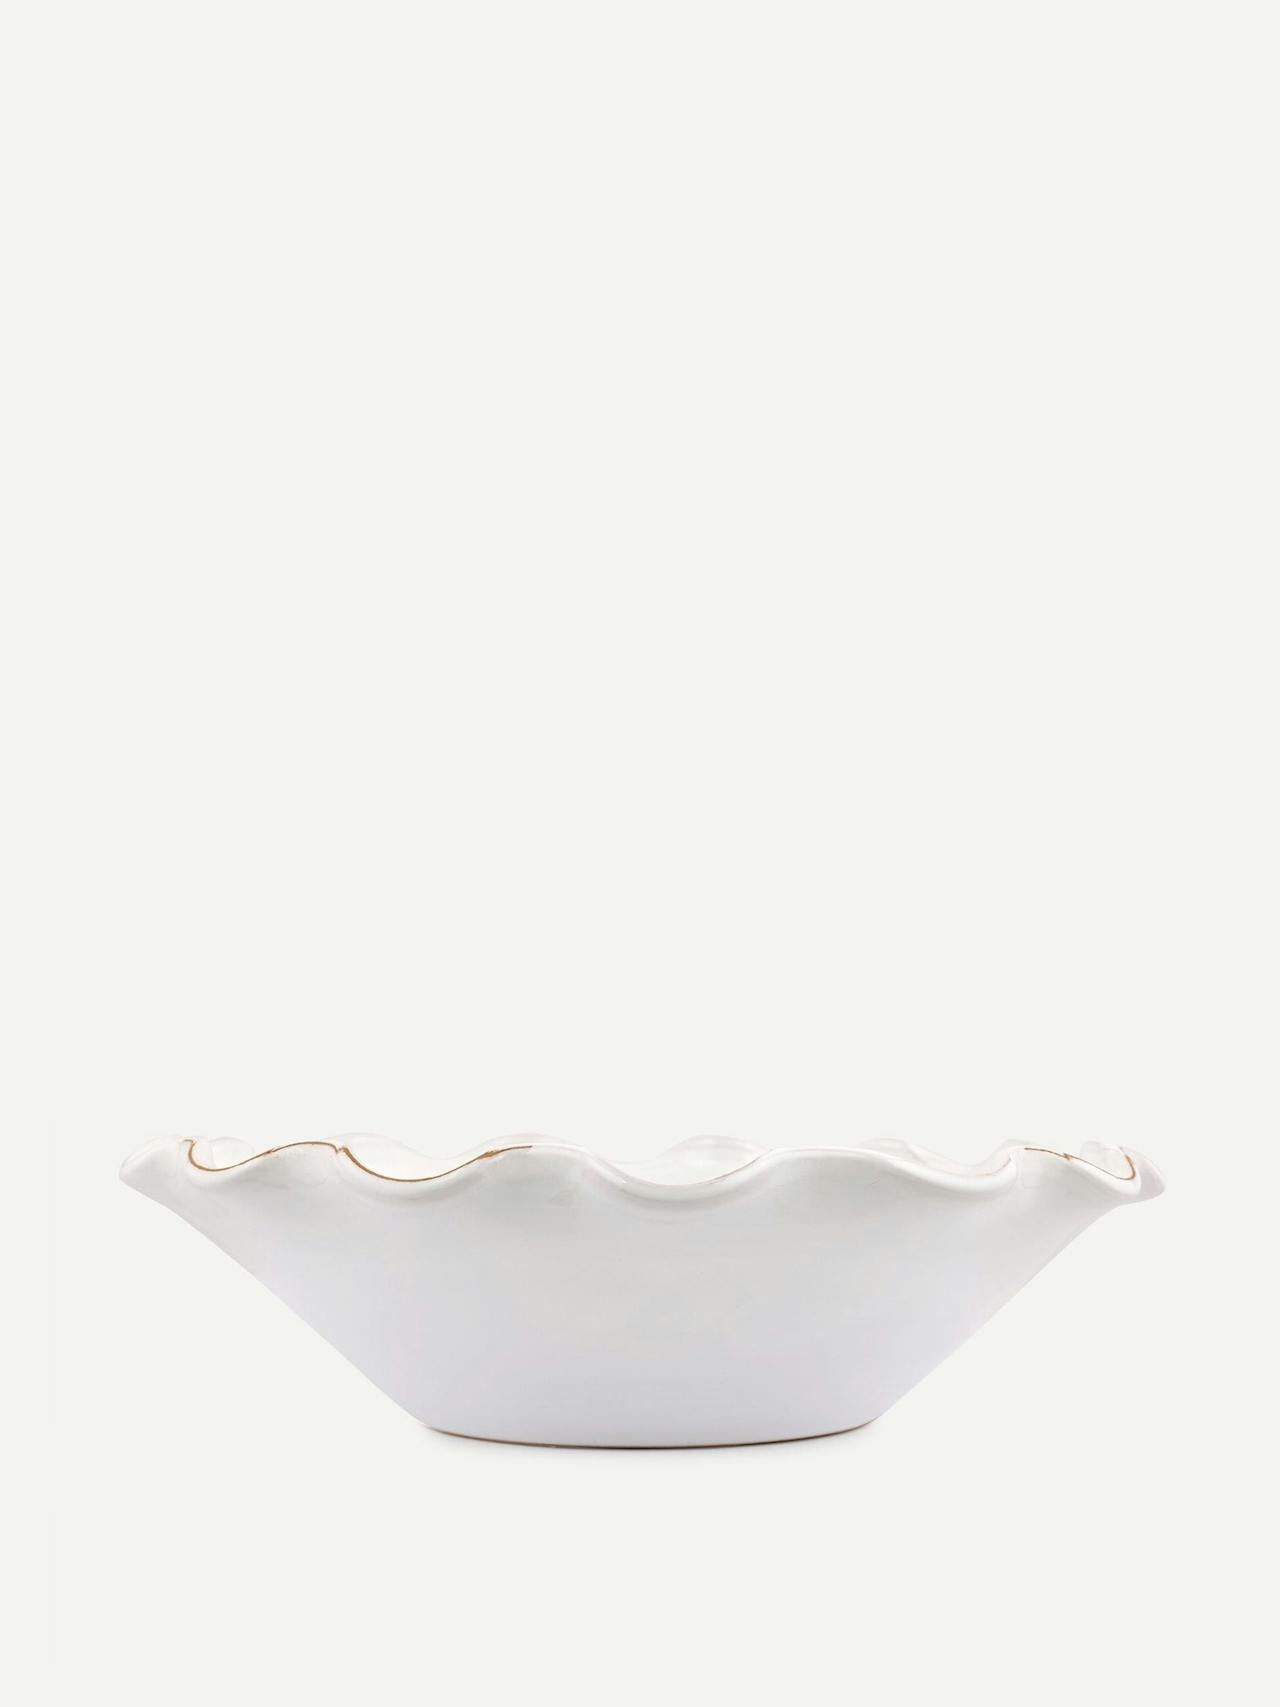 White ruffle ceramic bowl